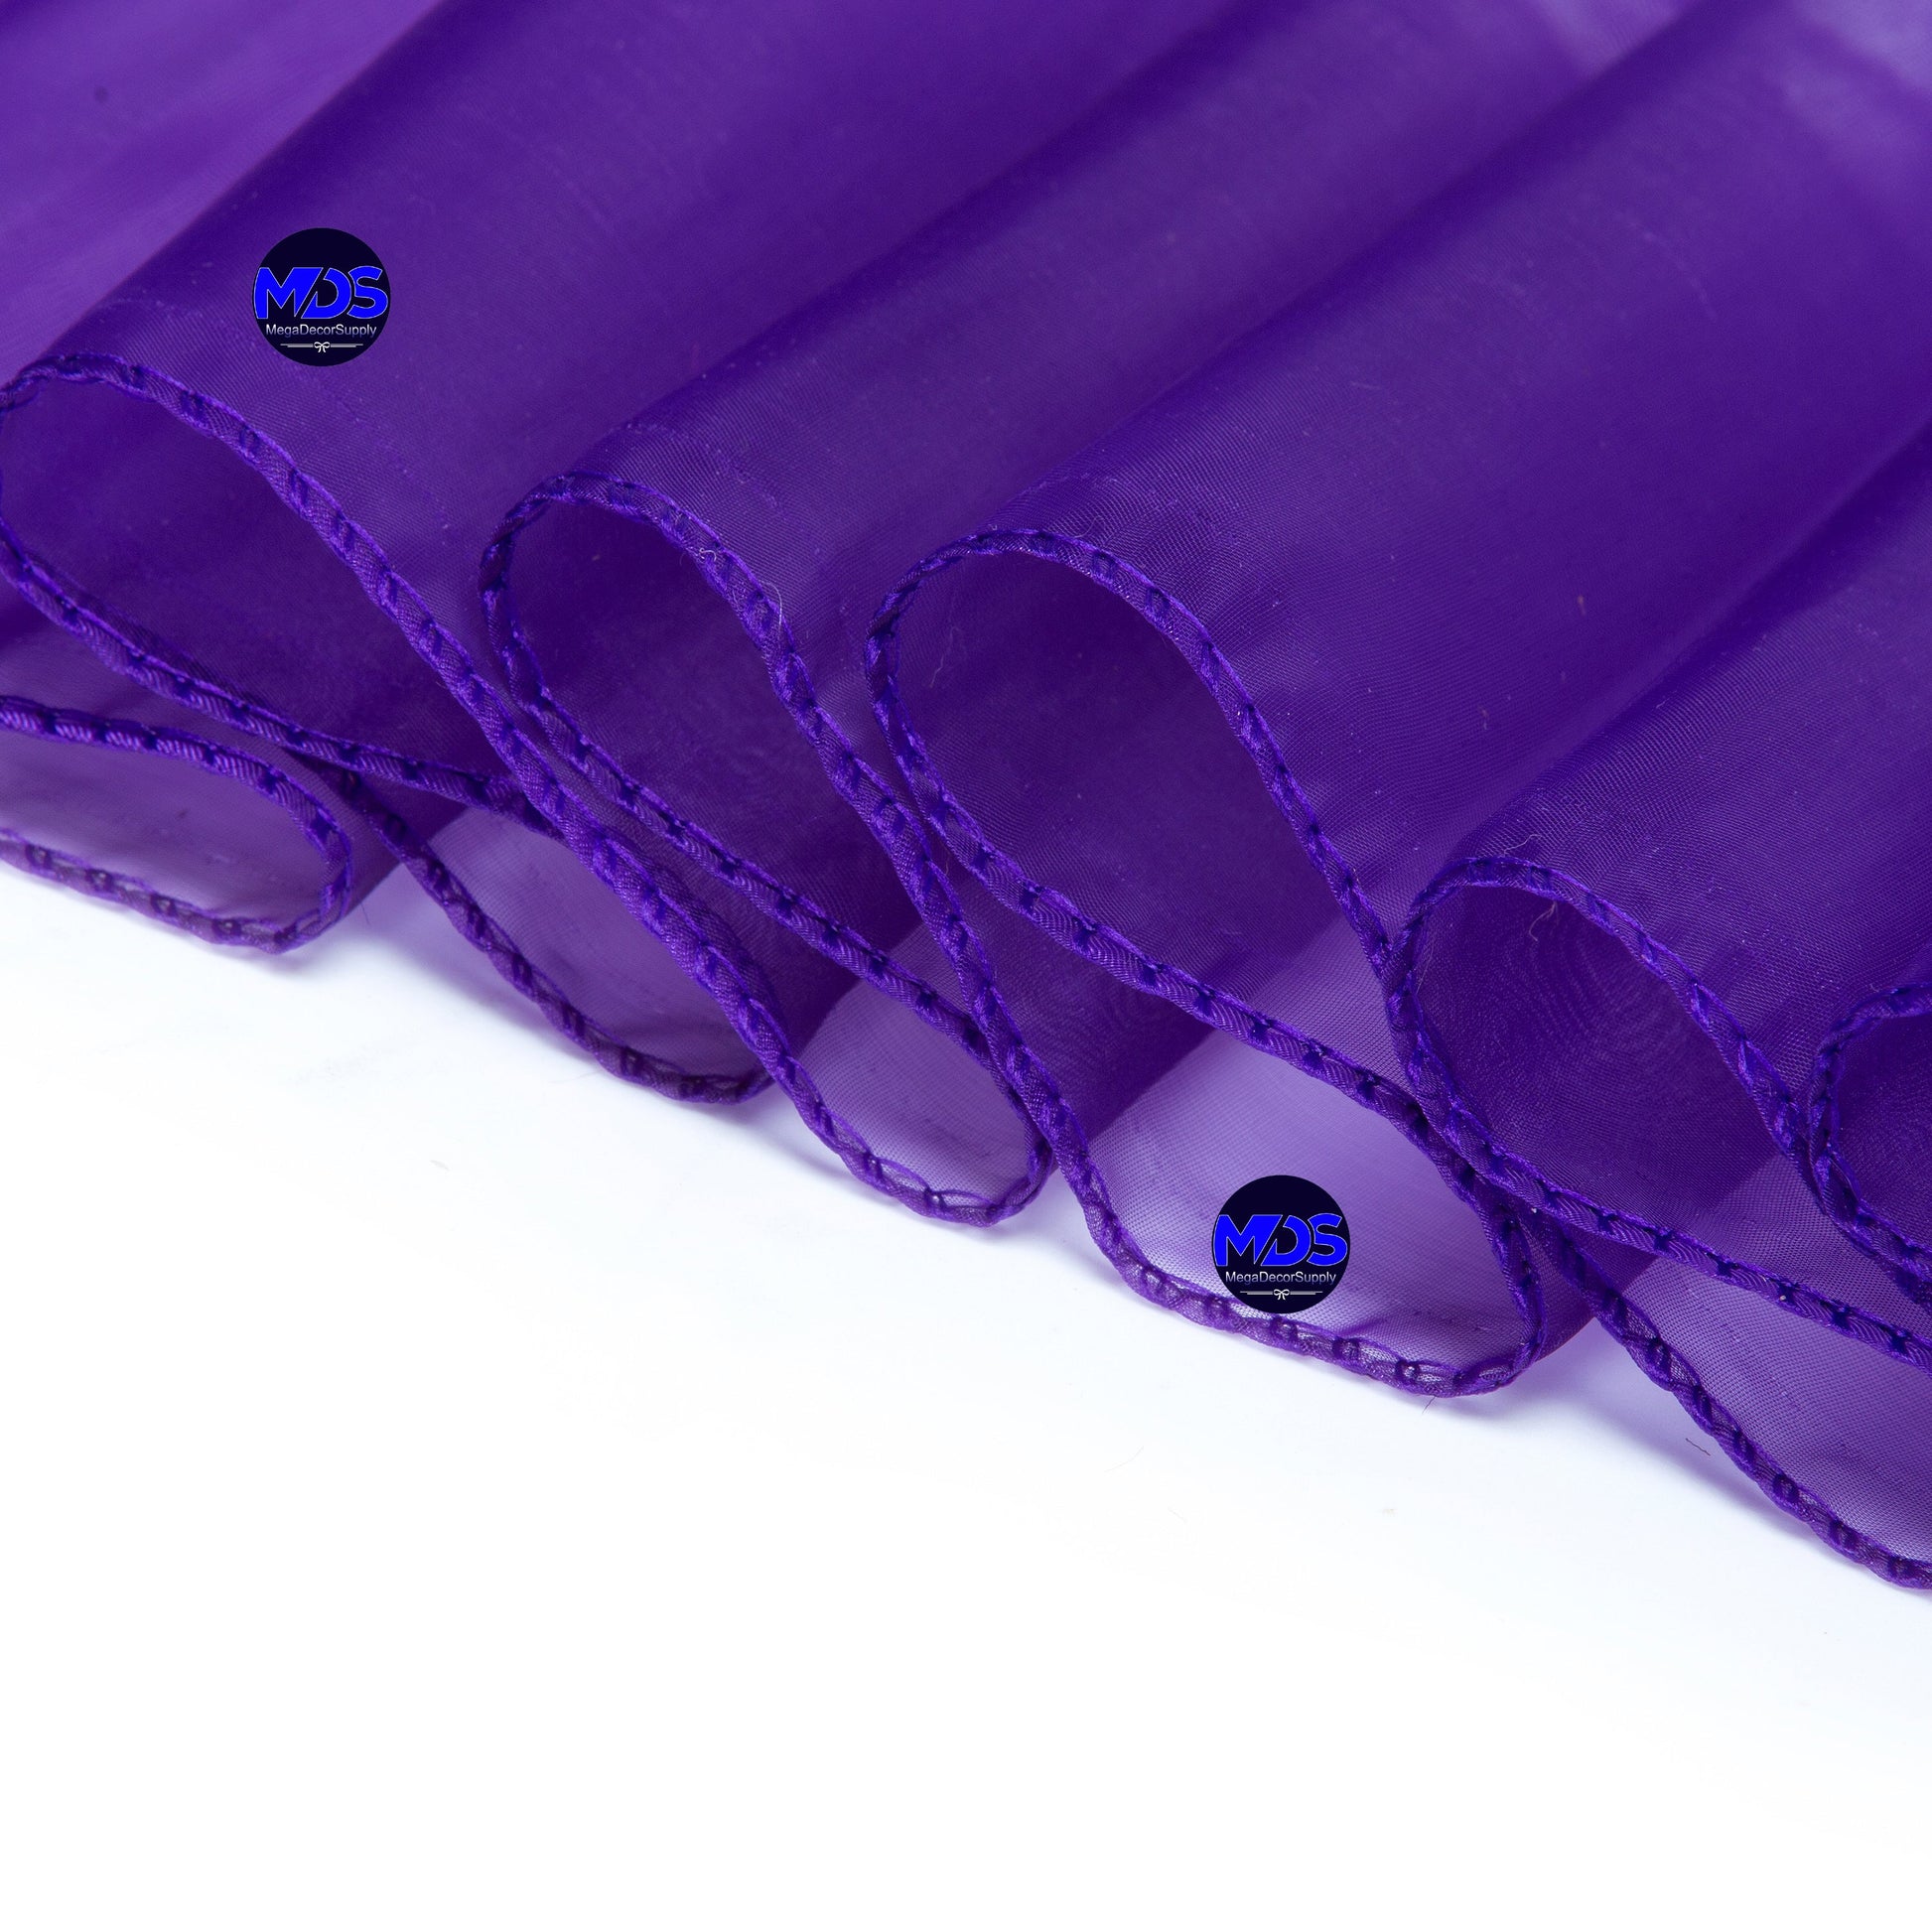 Cadbury Purple,43f3387e-65c6-4ad5-891c-0cd416fdbf0f